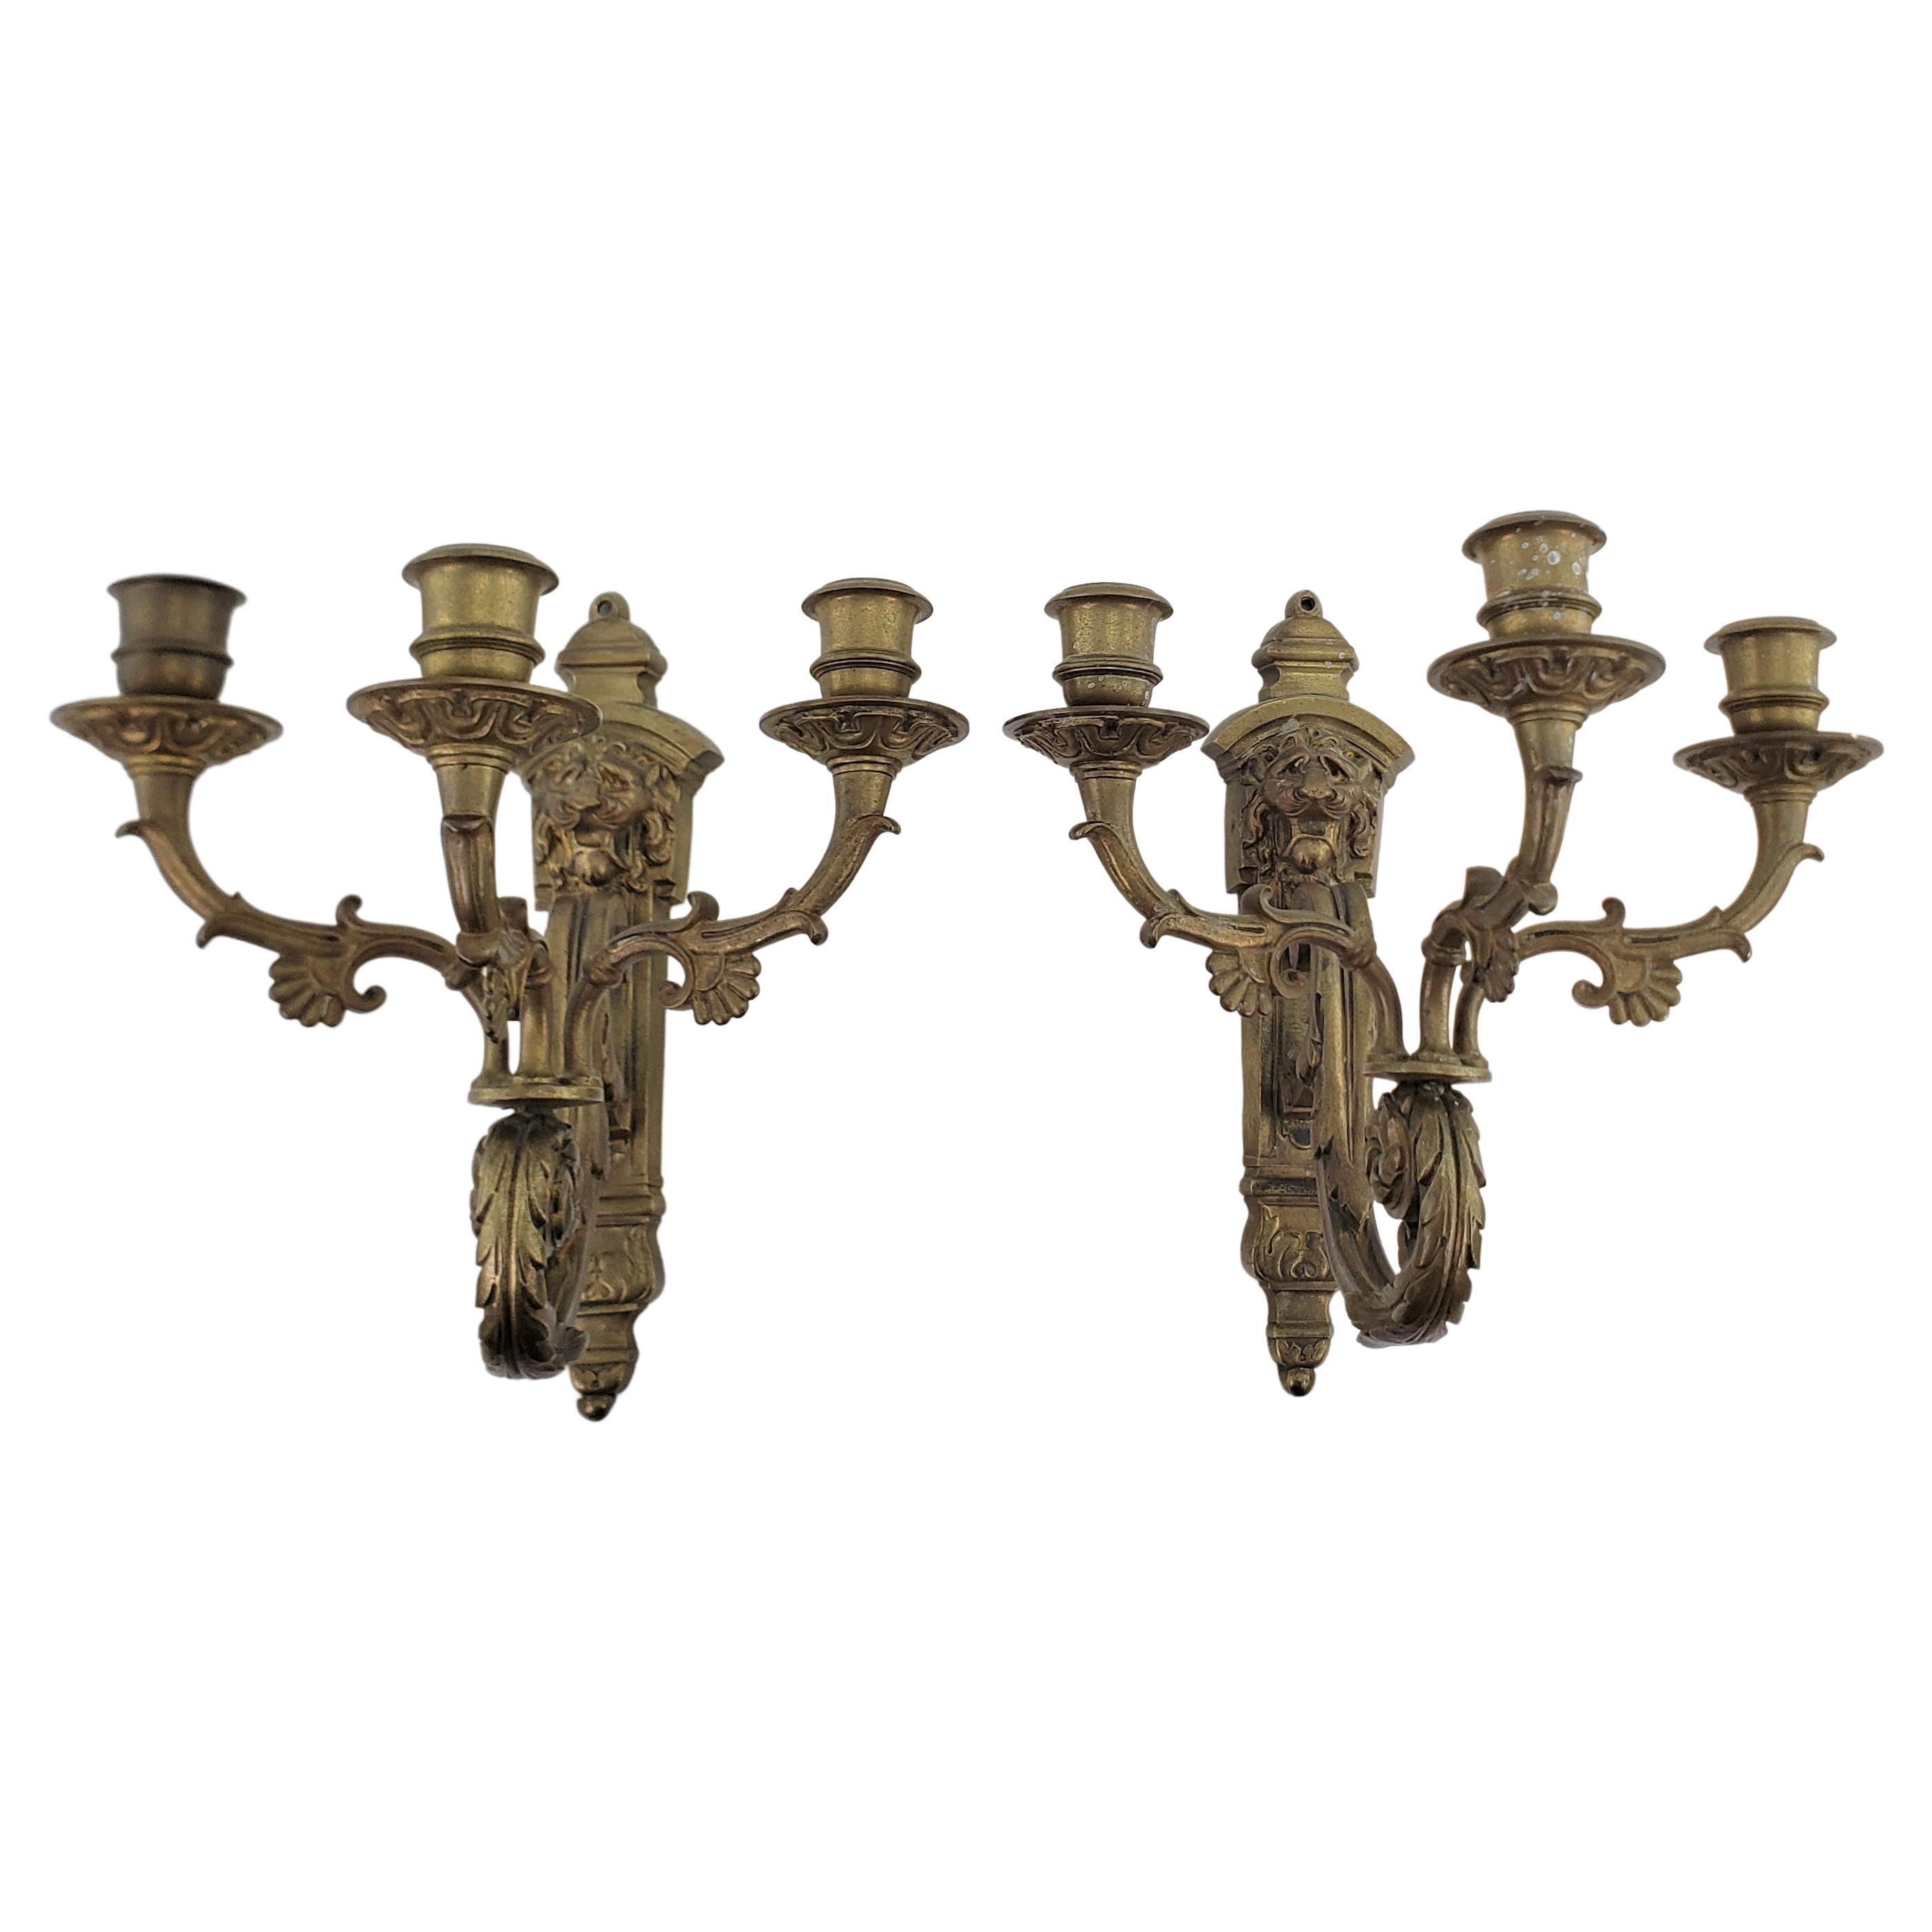 Pair of Antique Cast & Gilt Bronze Candle Sconces with Lion Head Decoration